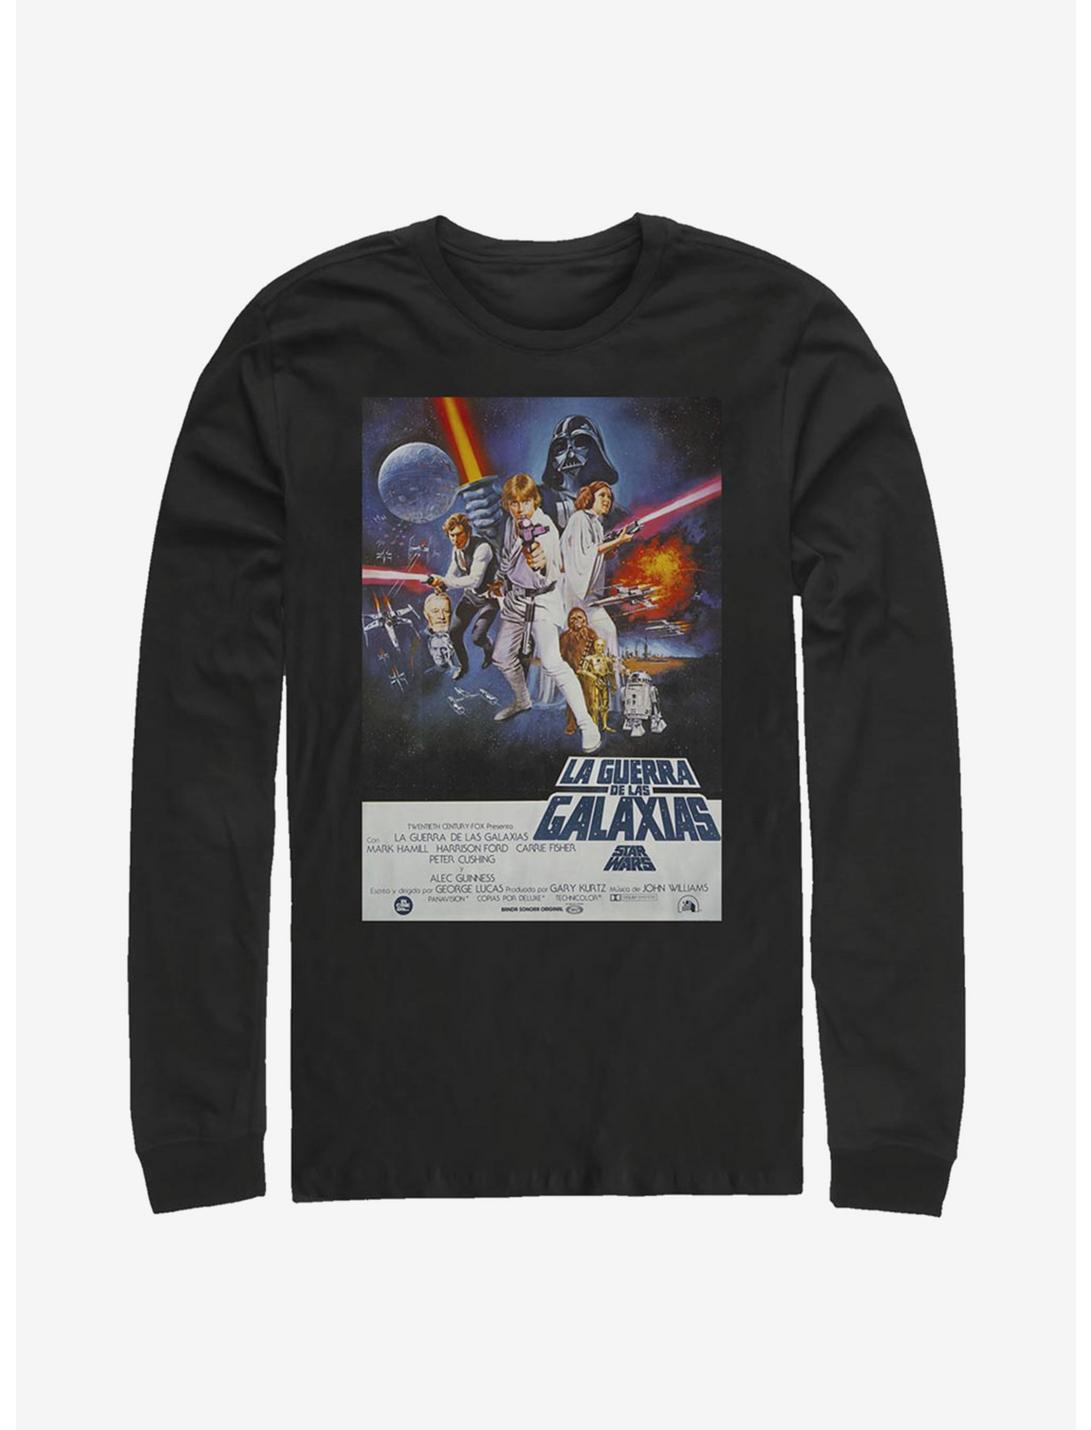 Star Wars Episode IV A New Hope La Guerra De Las Galaxias Poster Long-Sleeve T-Shirt, BLACK, hi-res